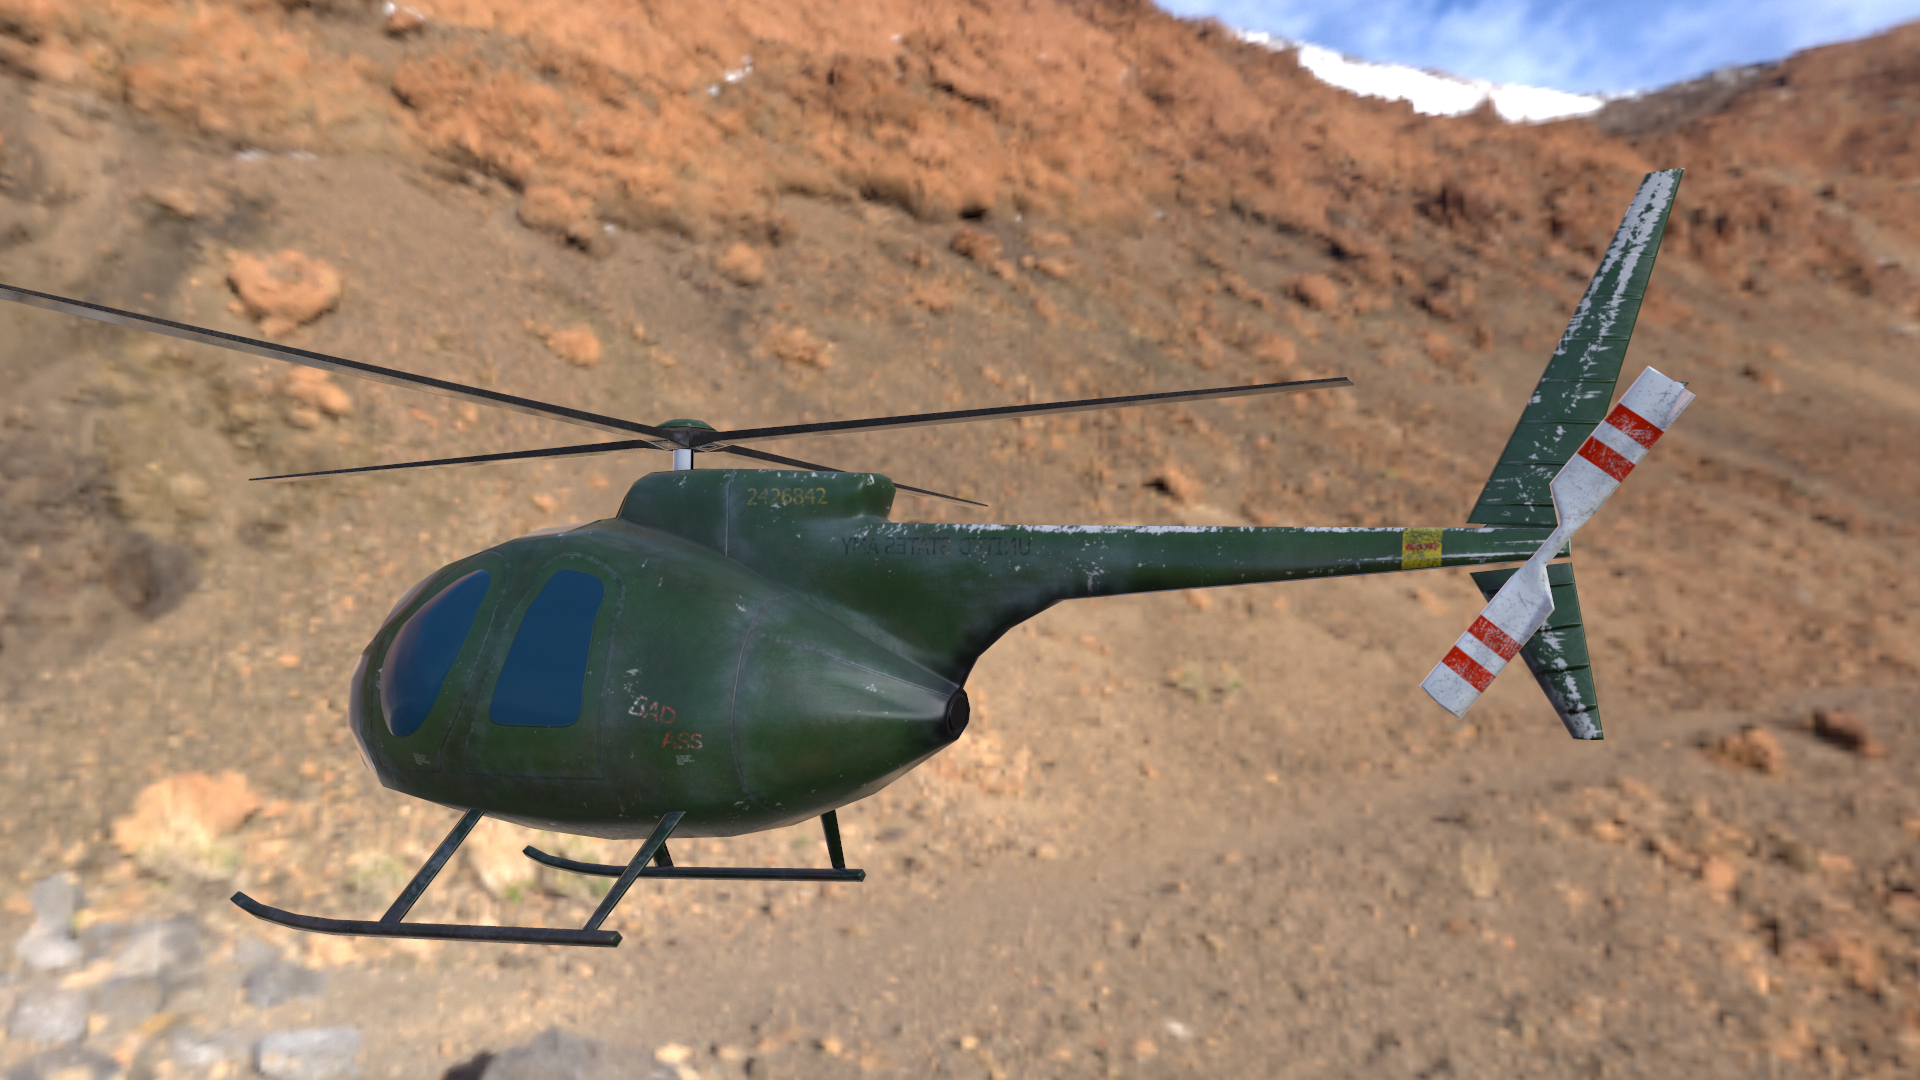 hélicoptère lowpoly modèle Hughes OH-6 Cayuse pour application mobile dans 3d max Other image